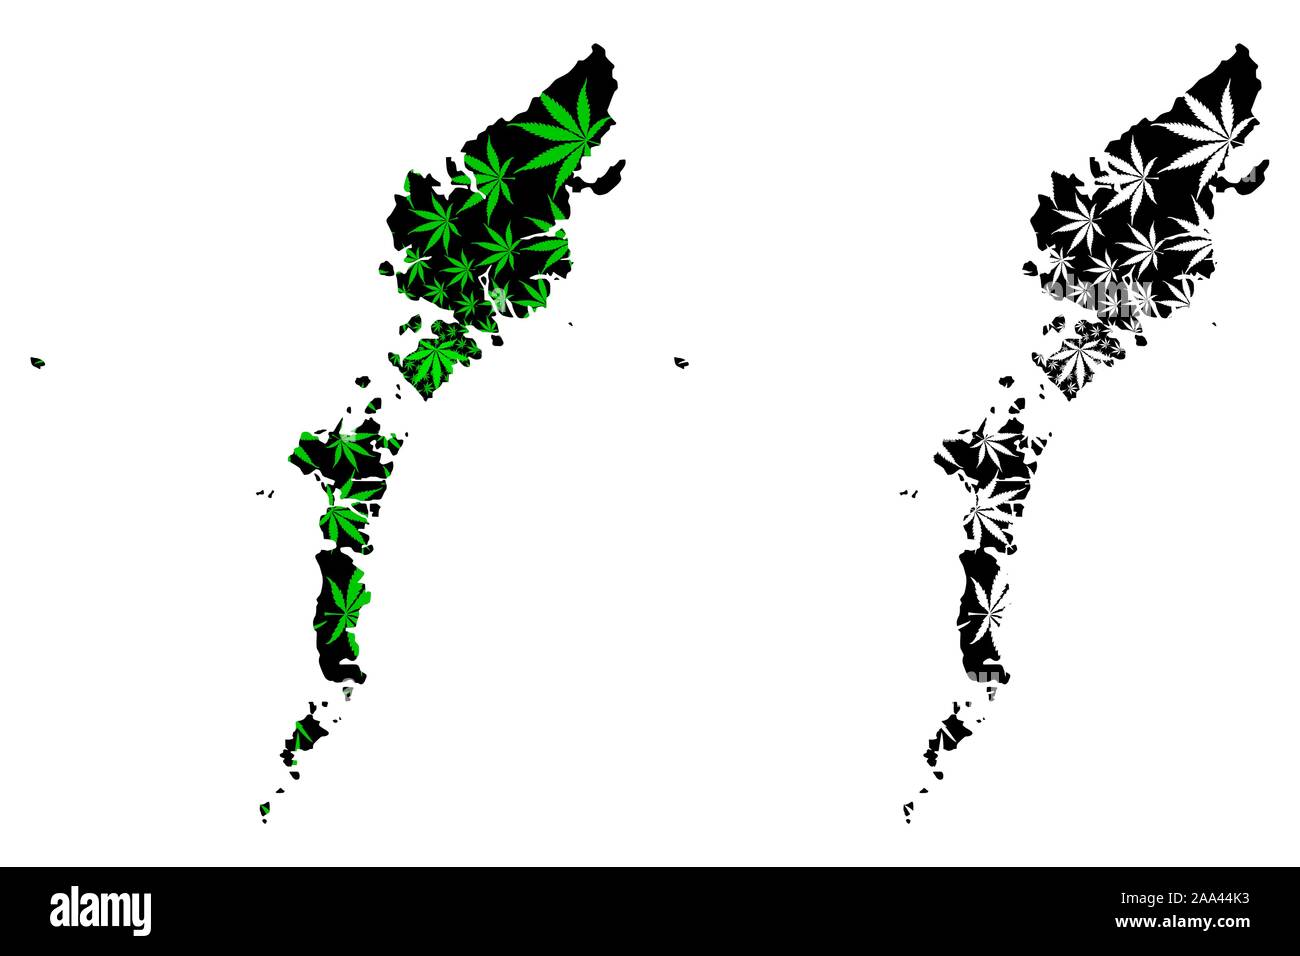 Comhairle nan Eilean Siar (Regno Unito) mappa è progettato Cannabis leaf verde e nero, Na h-Eileanan Siar (Ebridi esterne e dell' isola di Lewis) mappa ma Illustrazione Vettoriale